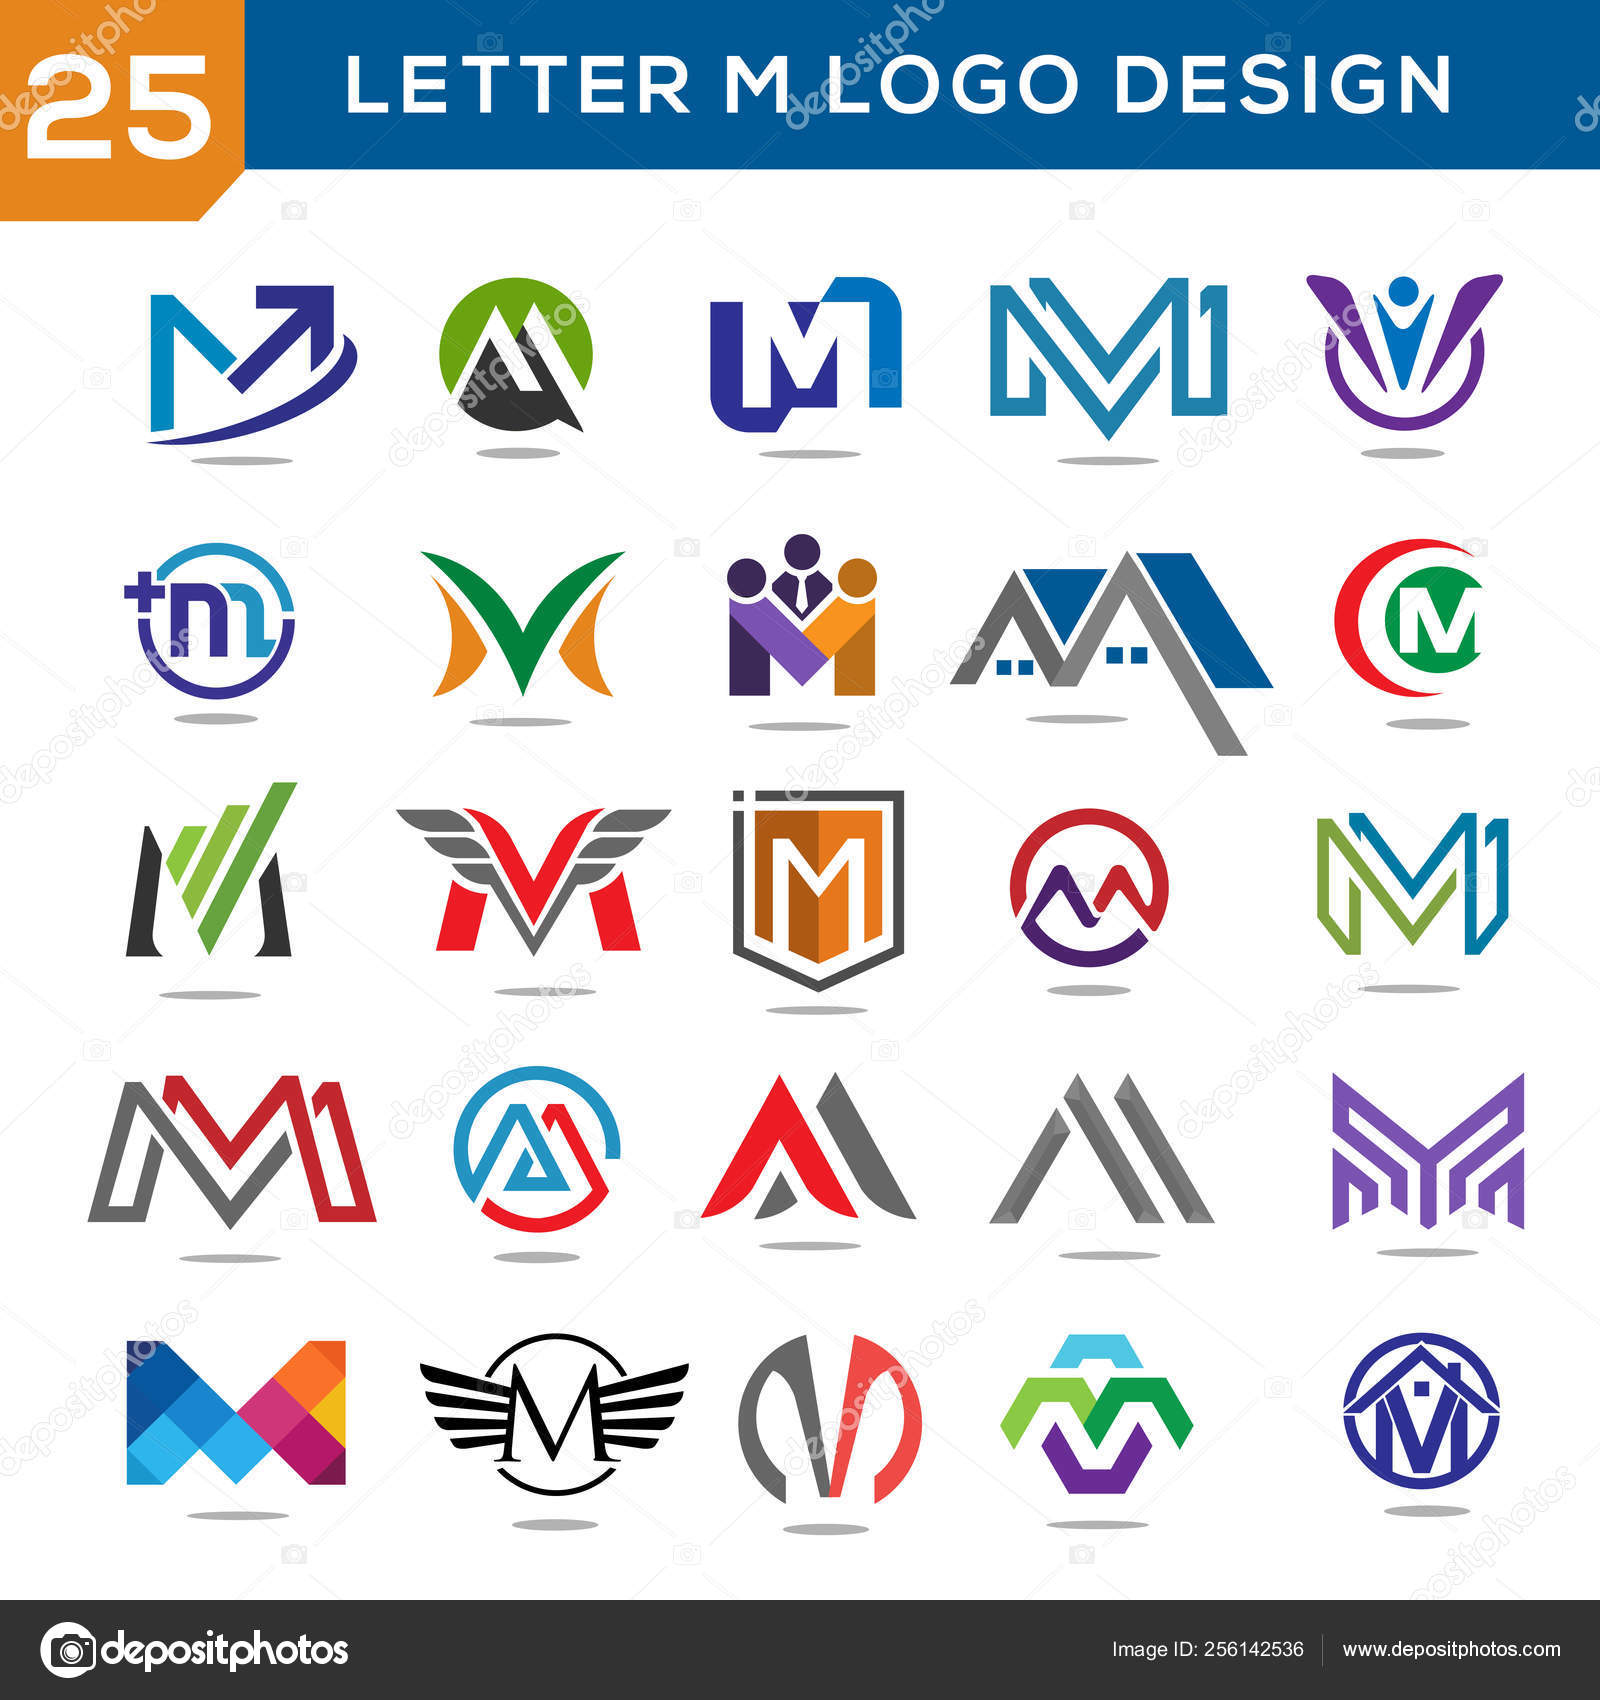 Elegant Letter Mm Logo